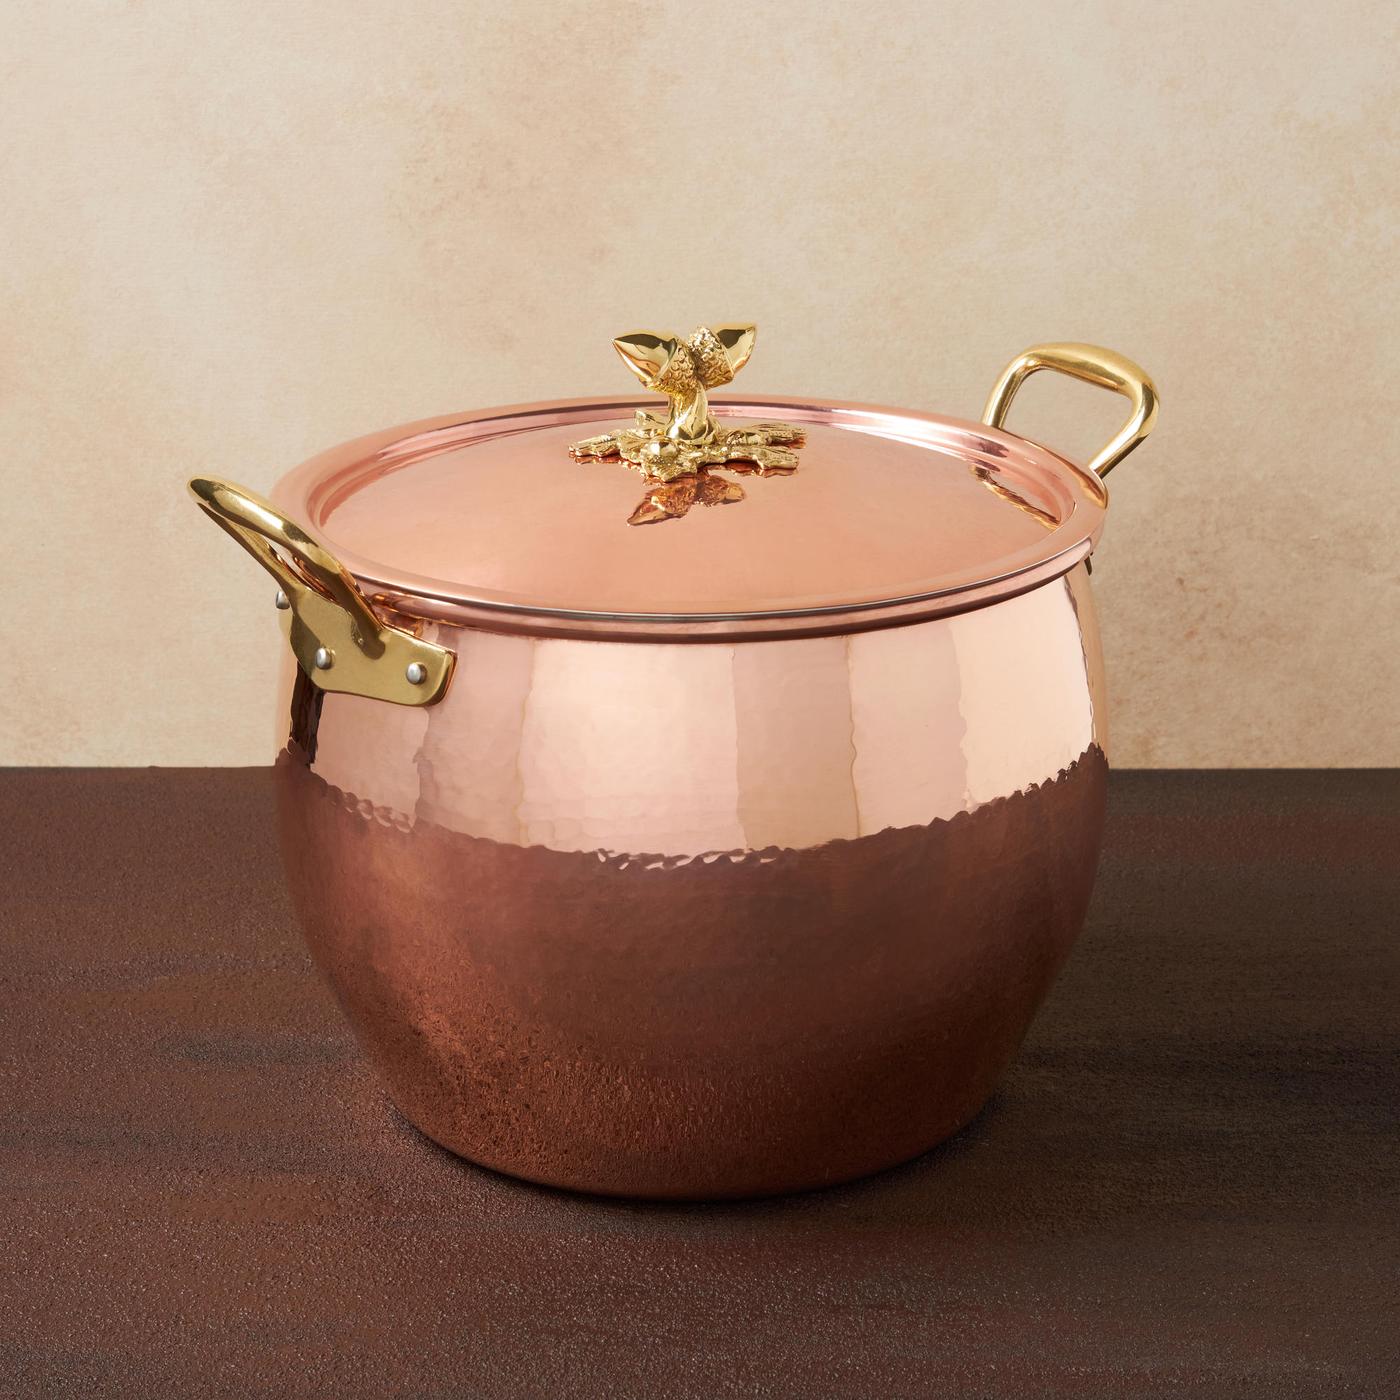 Ruffoni Historia Decor Copper Covered Stockpot, Multiple Sizes-3